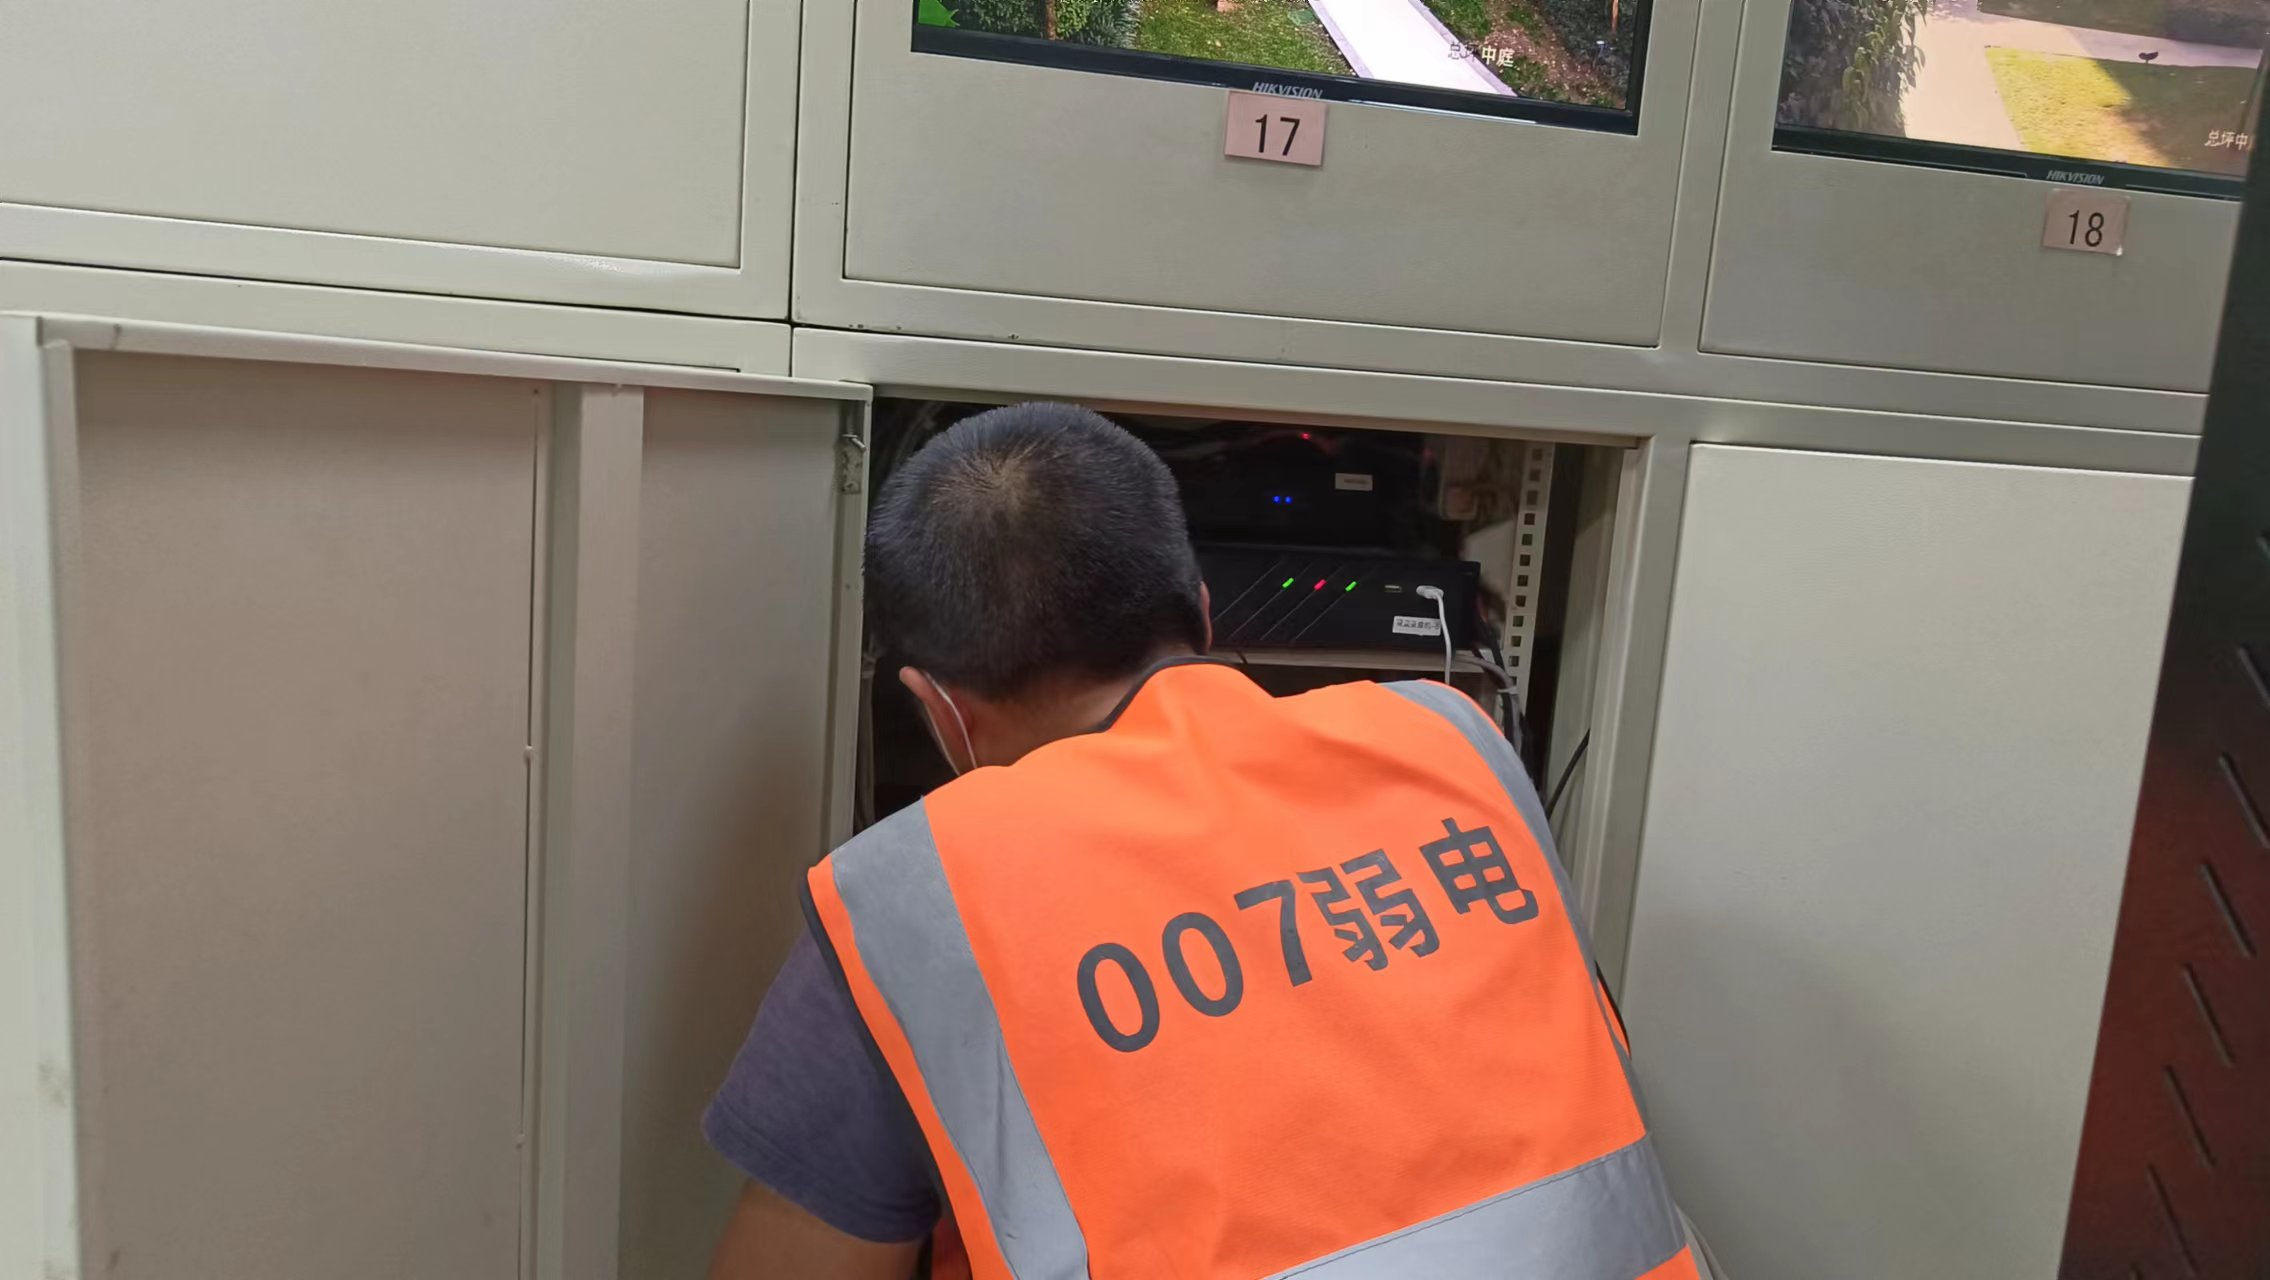 007弱电浅析校园视频监控系统维护校园安全